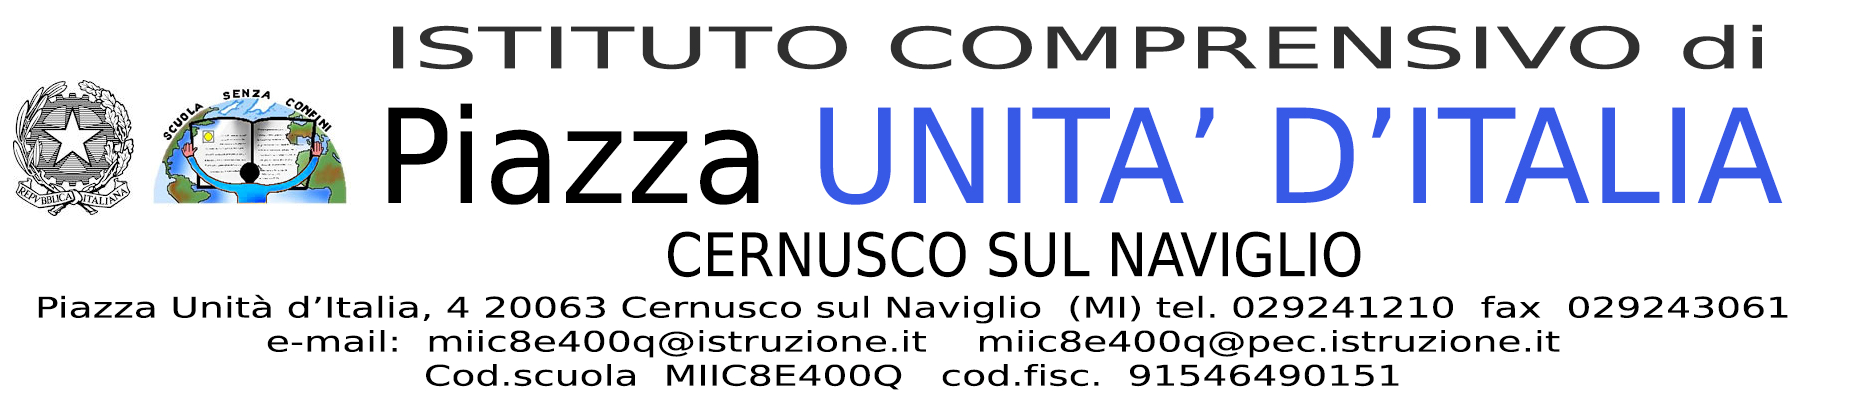 Codice univoco UF4X16 Prot. n. 3119/C14 Cernusco sul Naviglio, 13/07/2015 CIG ZCE155DD42 - Sangalli Cesare s.a.s. cesare.sangalli@gmail.com - Studio ag.i.com s.r.l. info@agicomstudio.